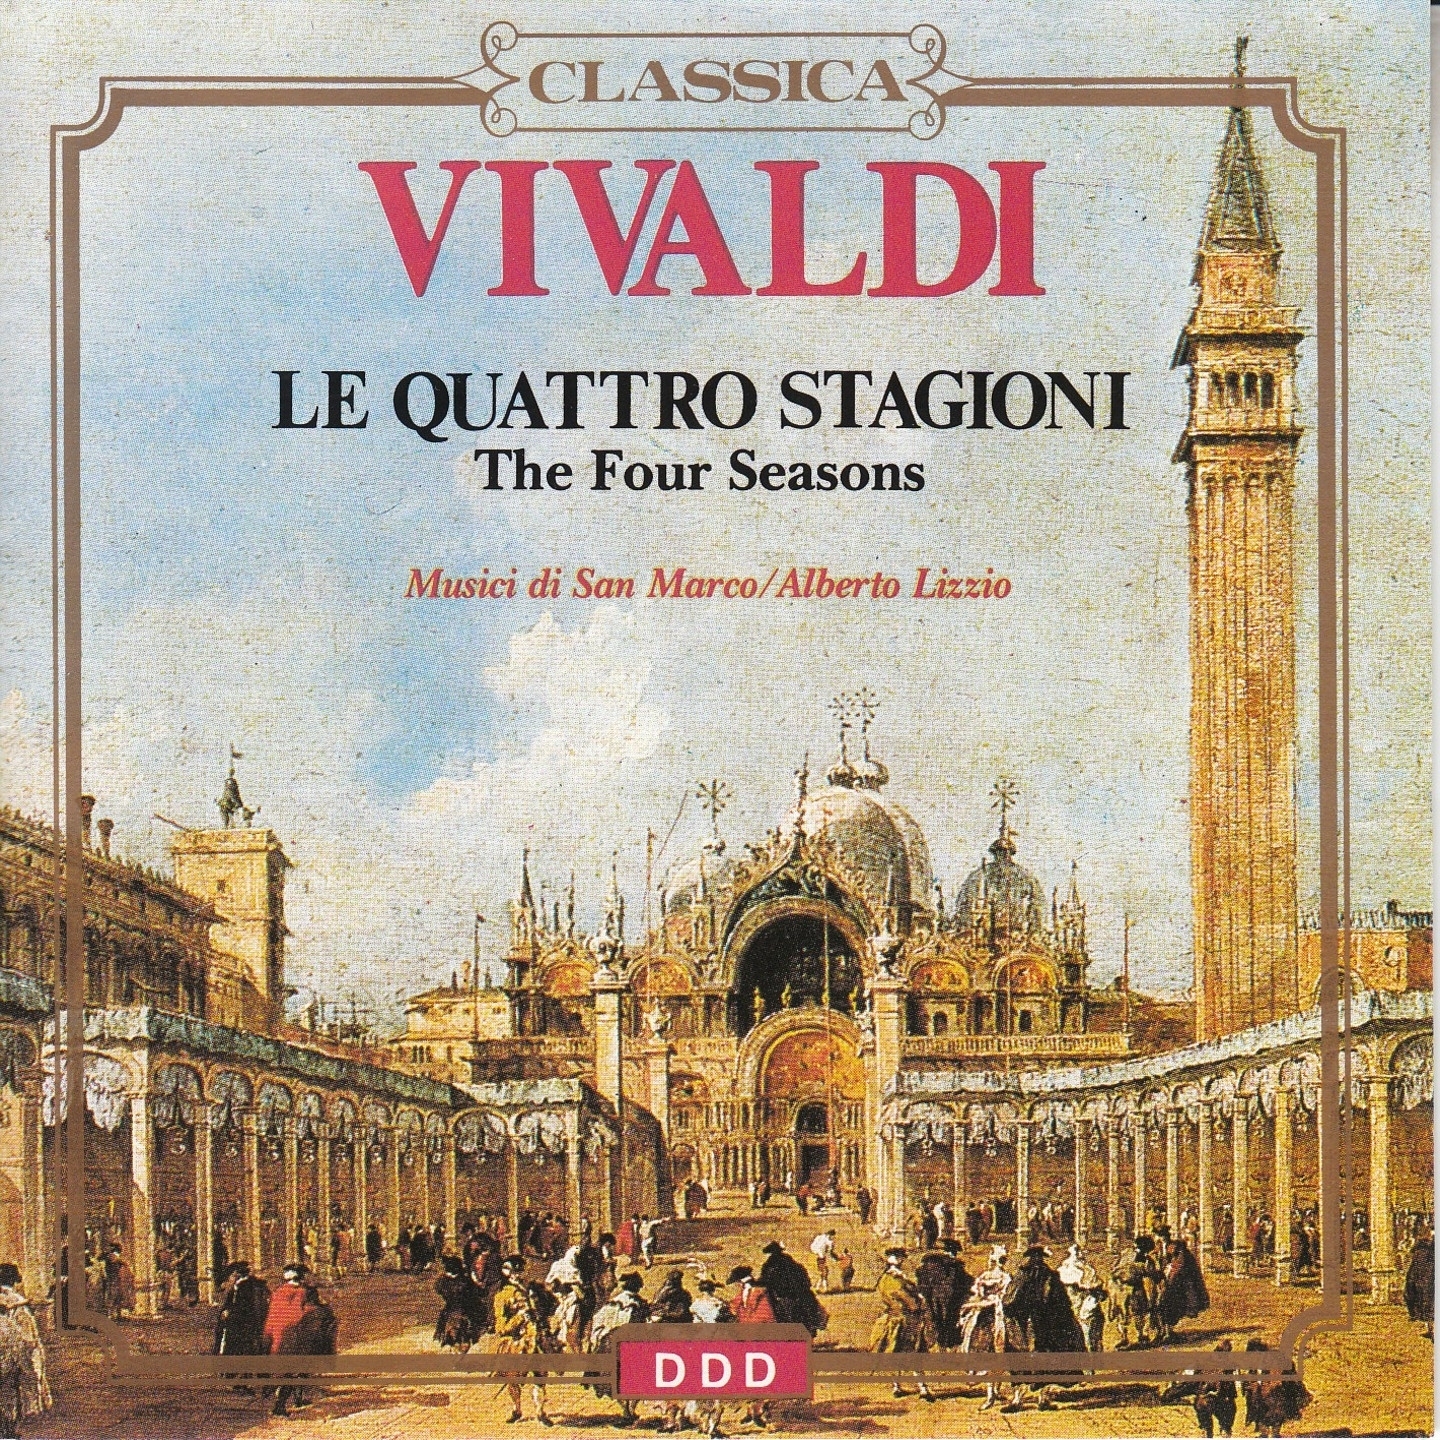 Concerto for String in G Major, RV 151 "Alla rustica": II. Adagio